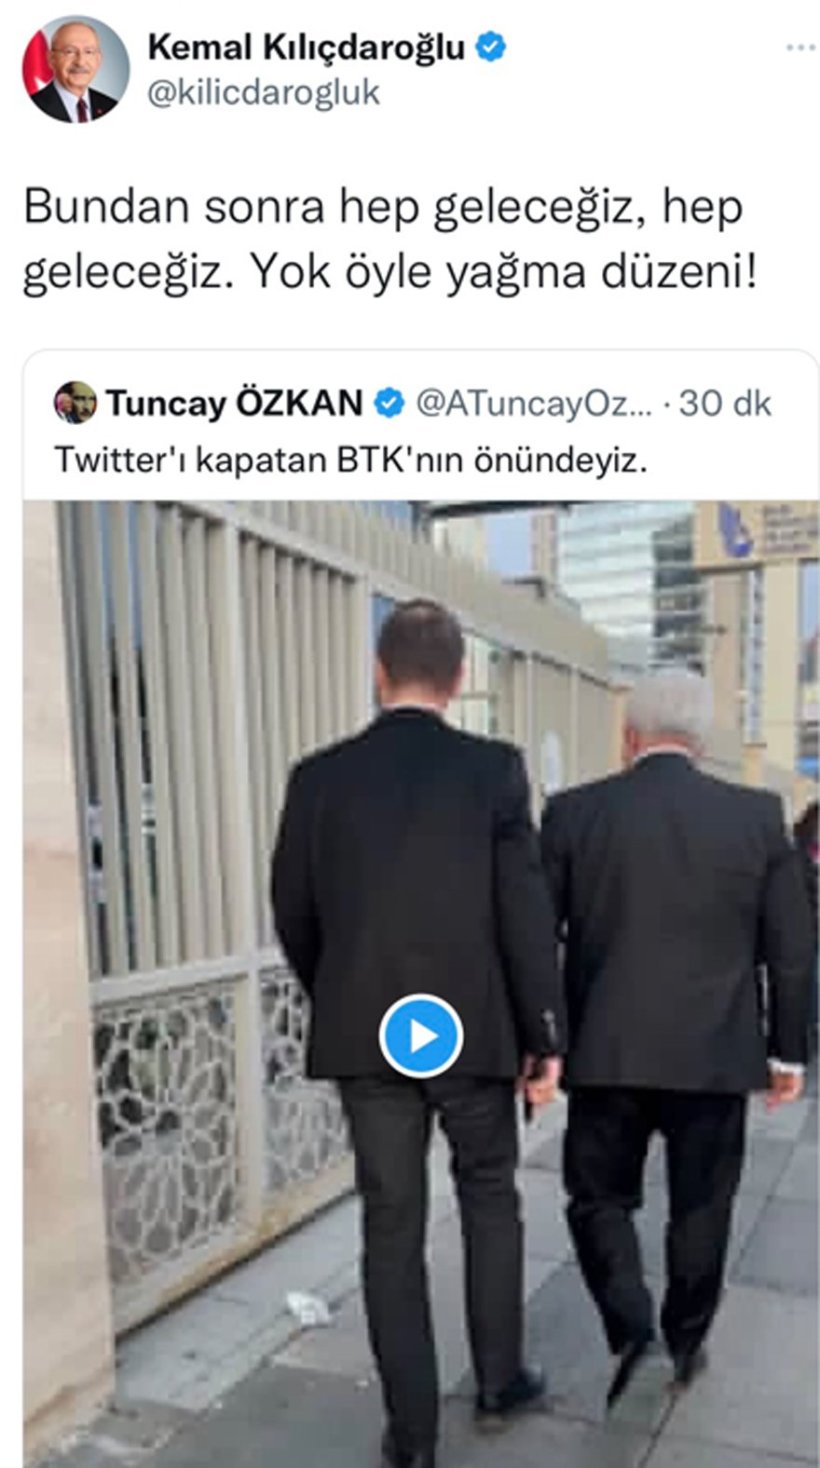 Türkiye'de sosyal medyanın fişi çekildi:  Twitter ve TikTok’a erişim sınırlaması